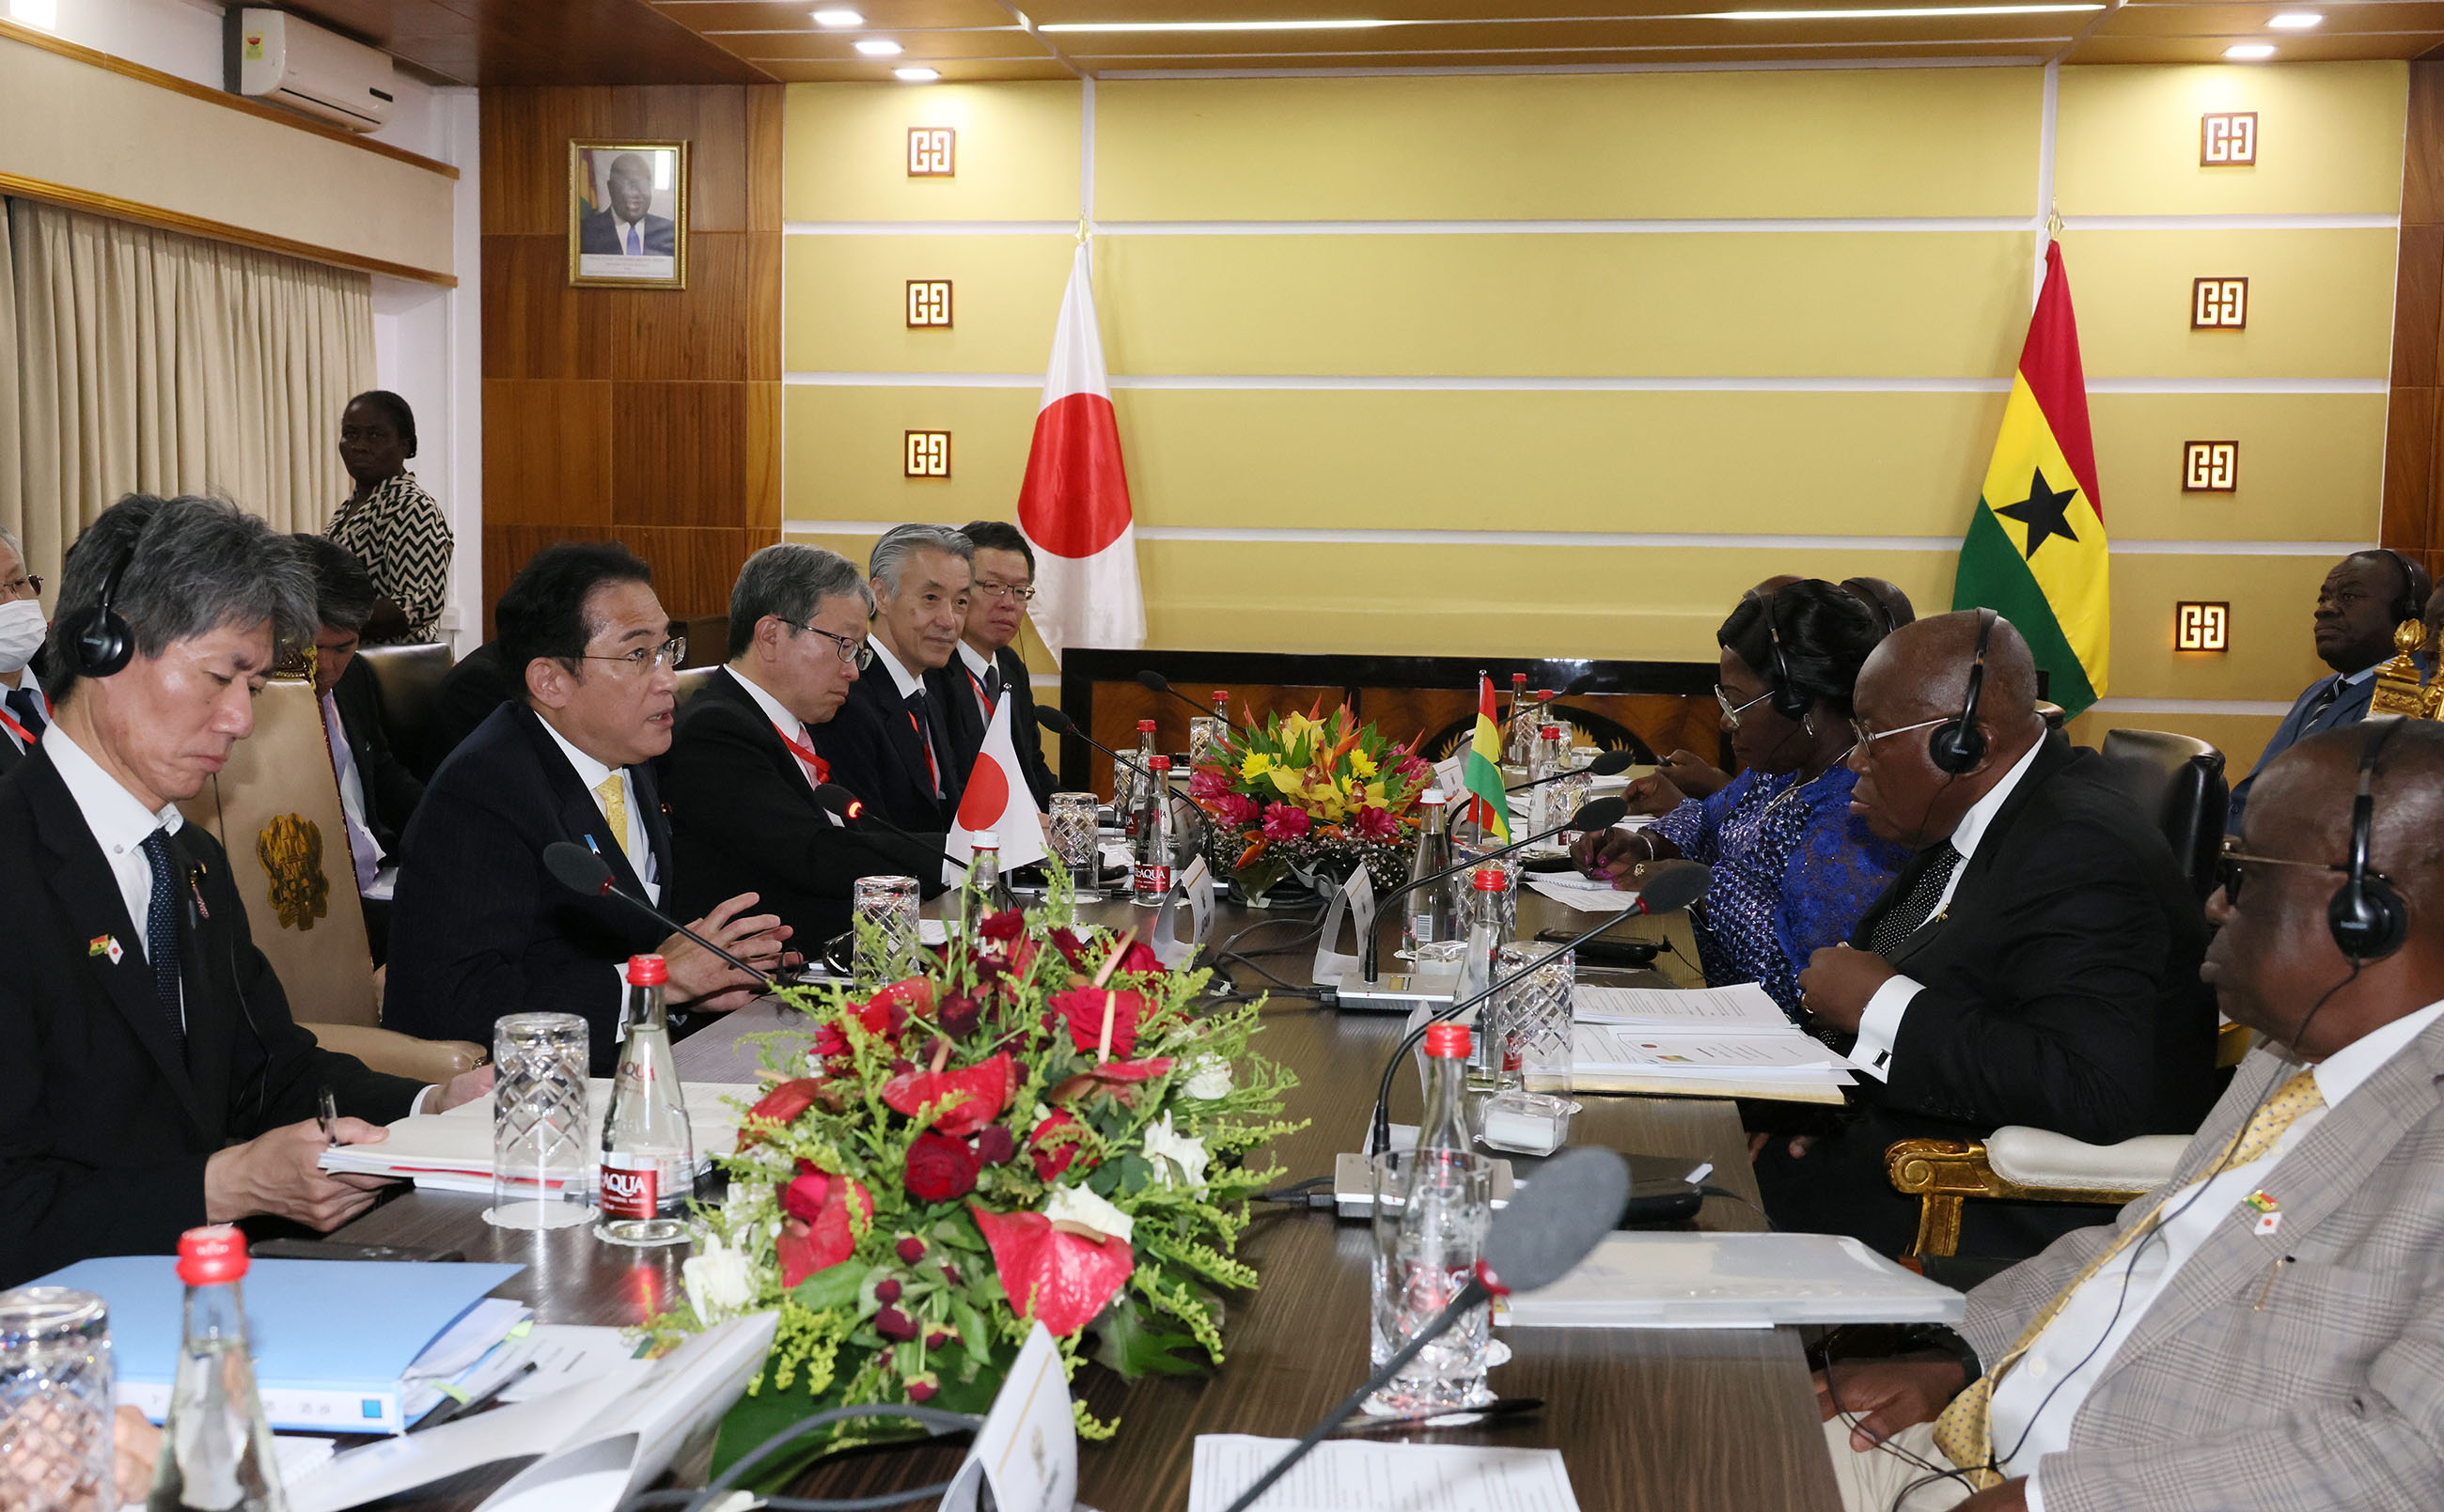 Japan-Ghana Summit Meeting (5)